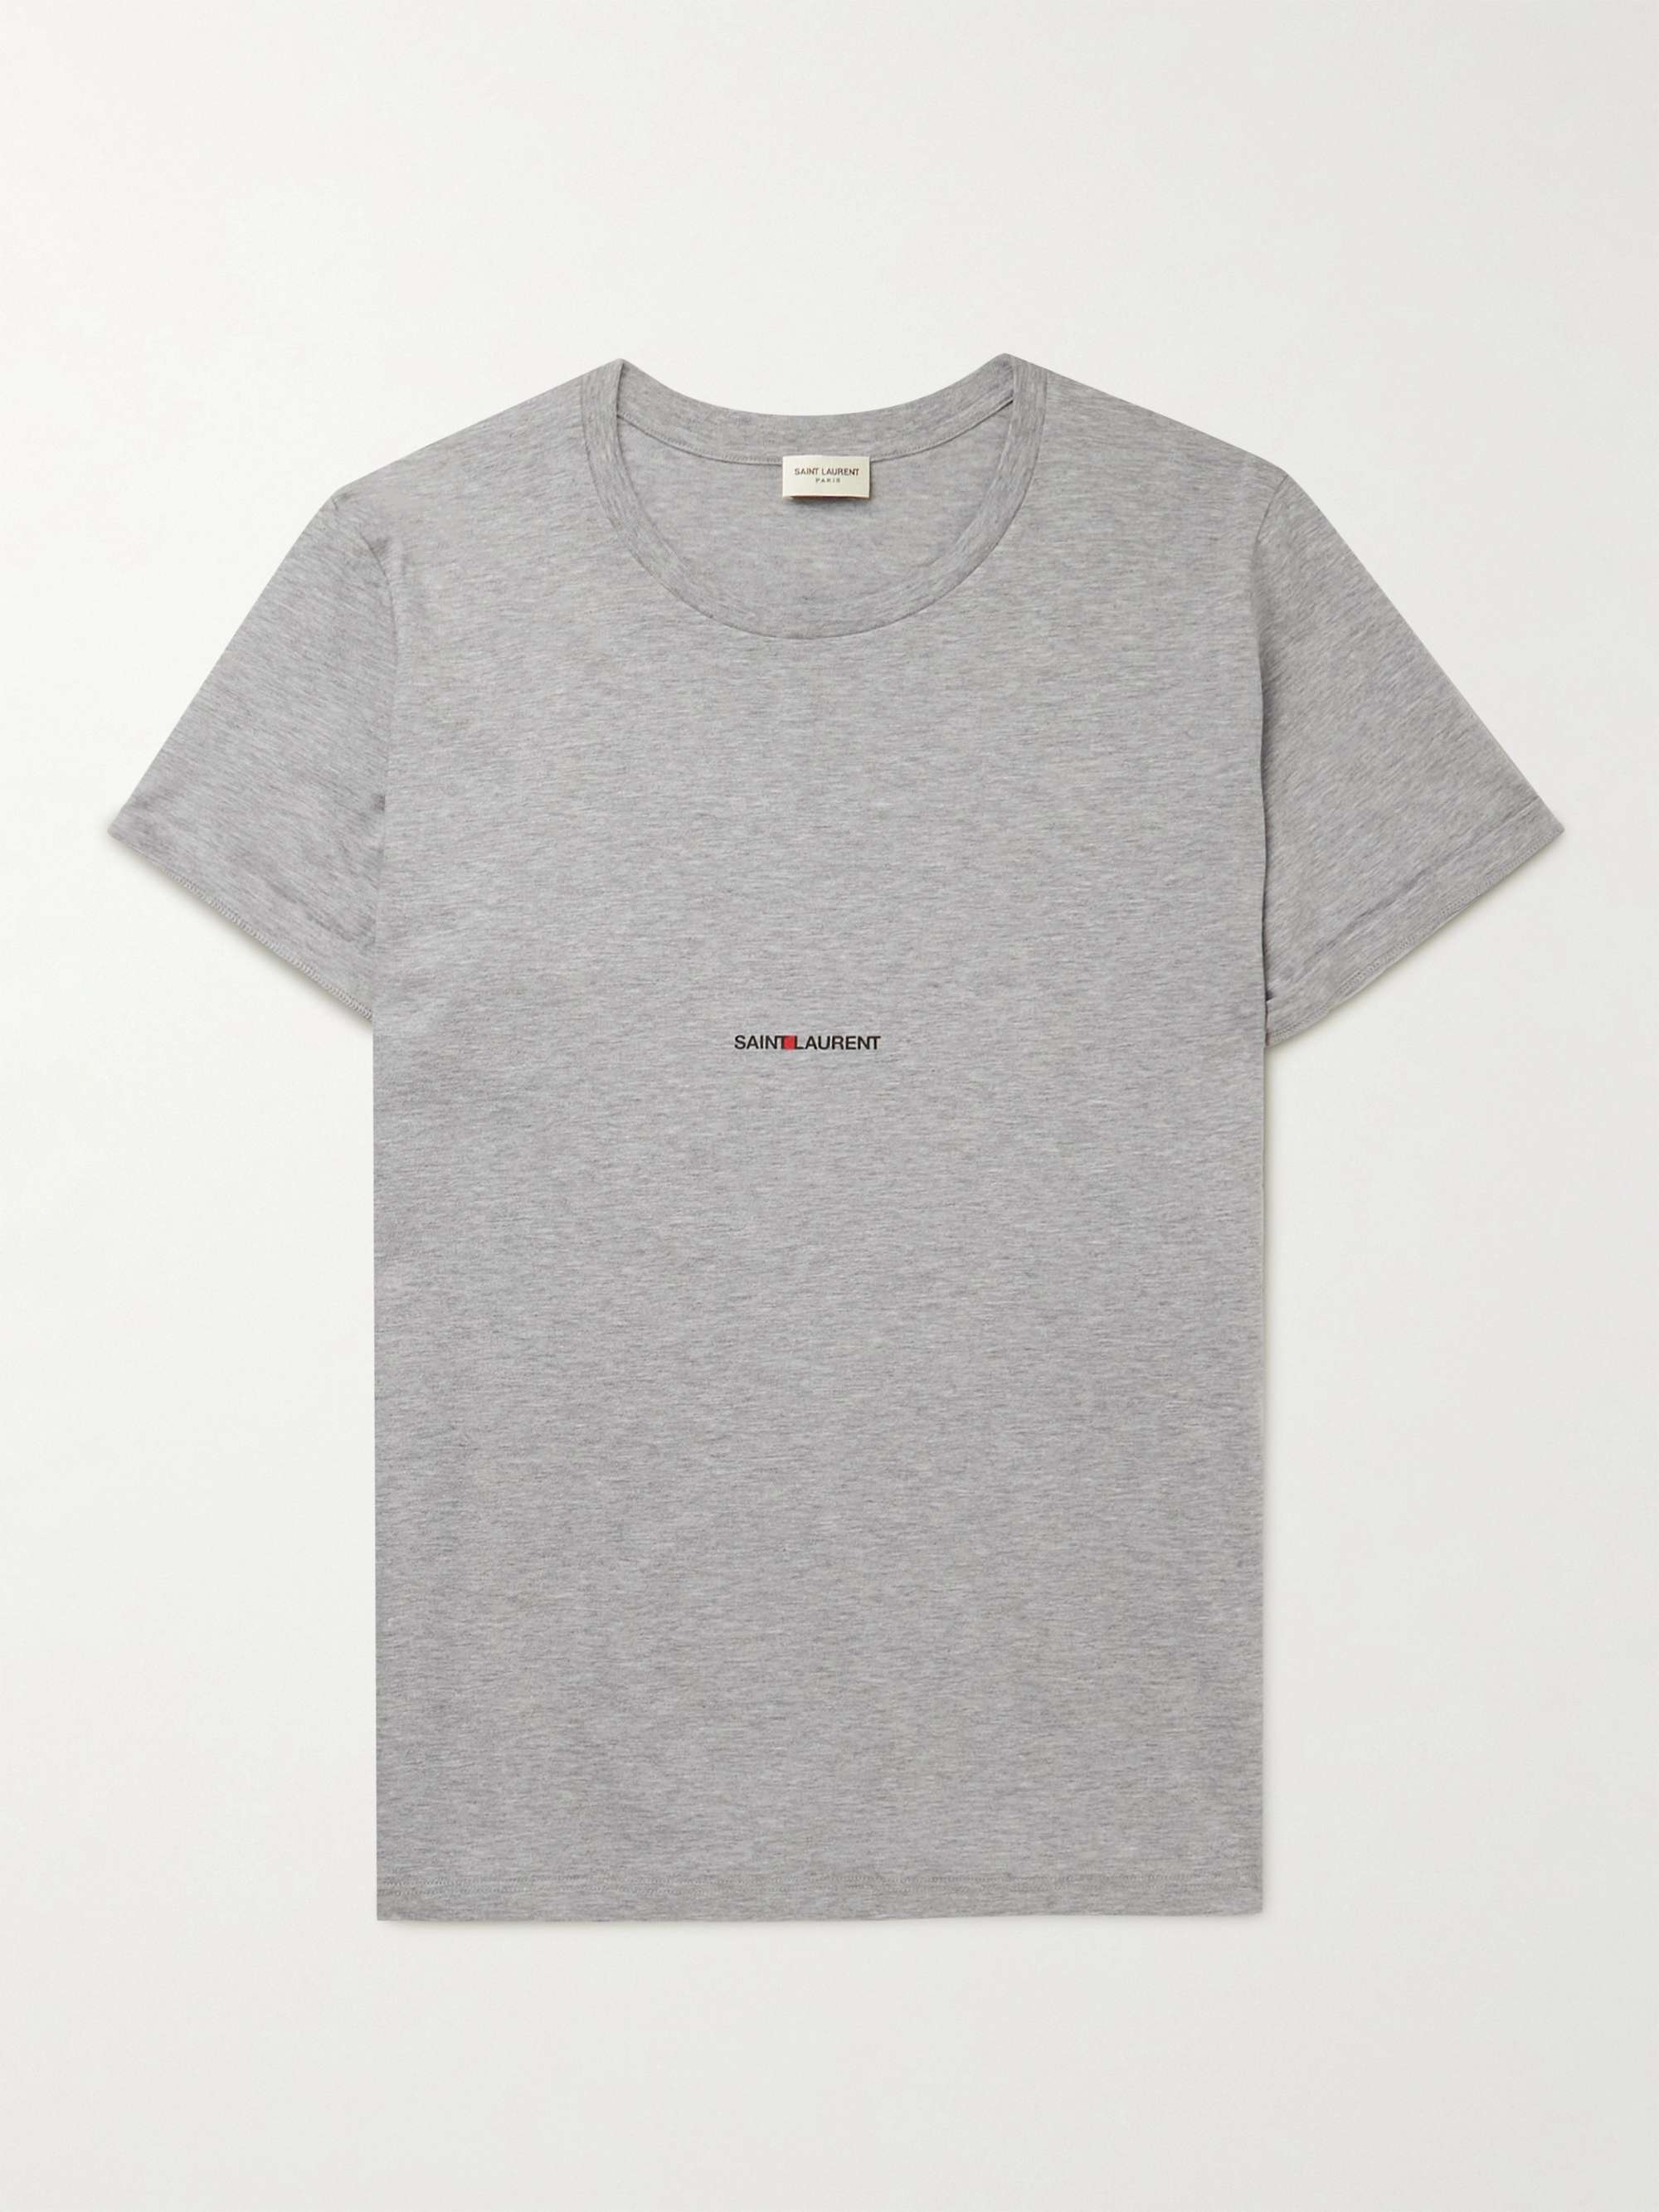 SAINT LAURENT Slim-Fit Logo-Print Cotton-Jersey T-Shirt for Men | MR PORTER